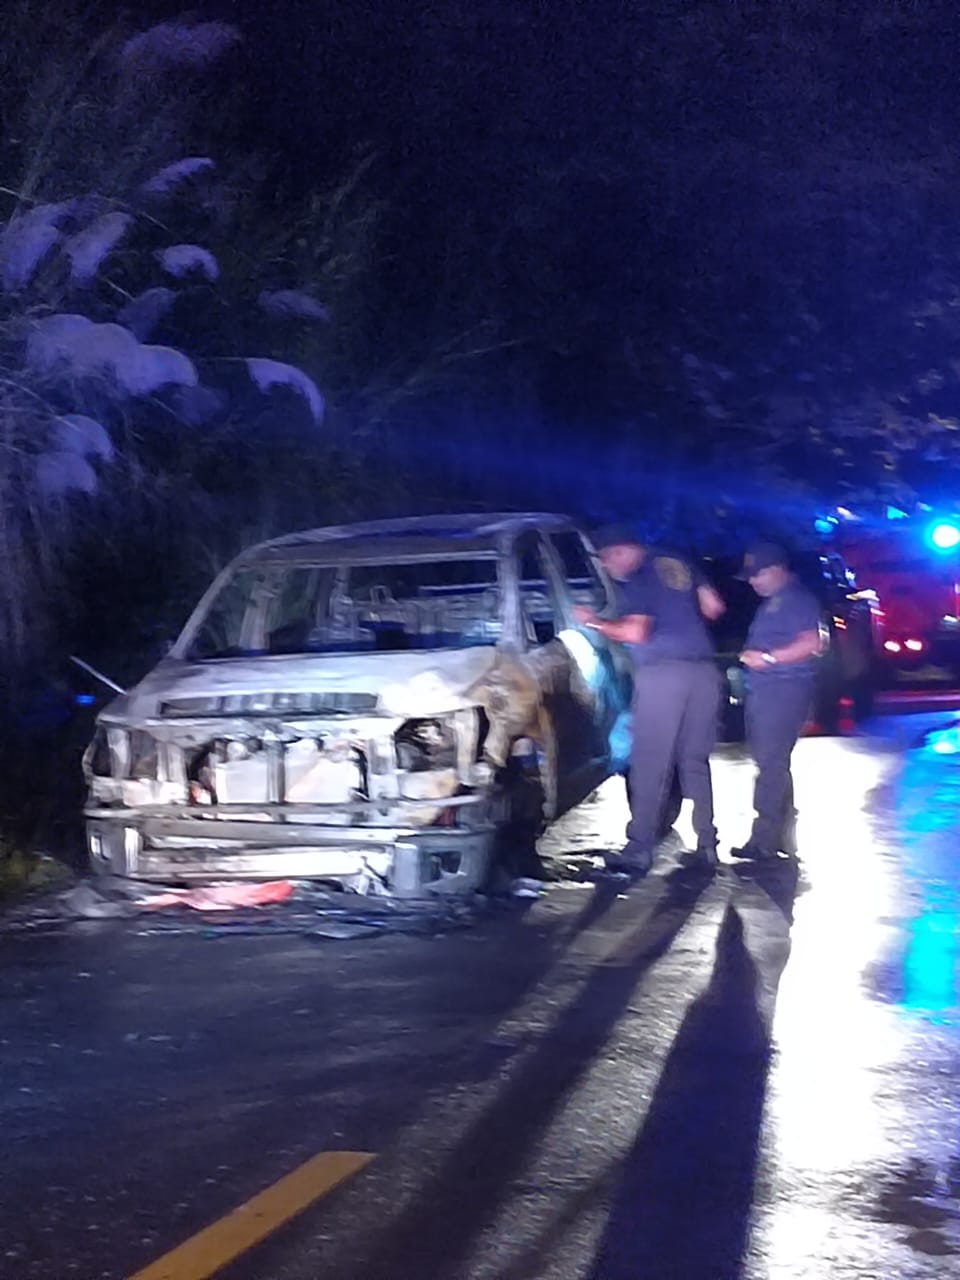 Featured image for “Buscan dar con responsables de hurtar e incendiar un auto en Altos de Tocumen”